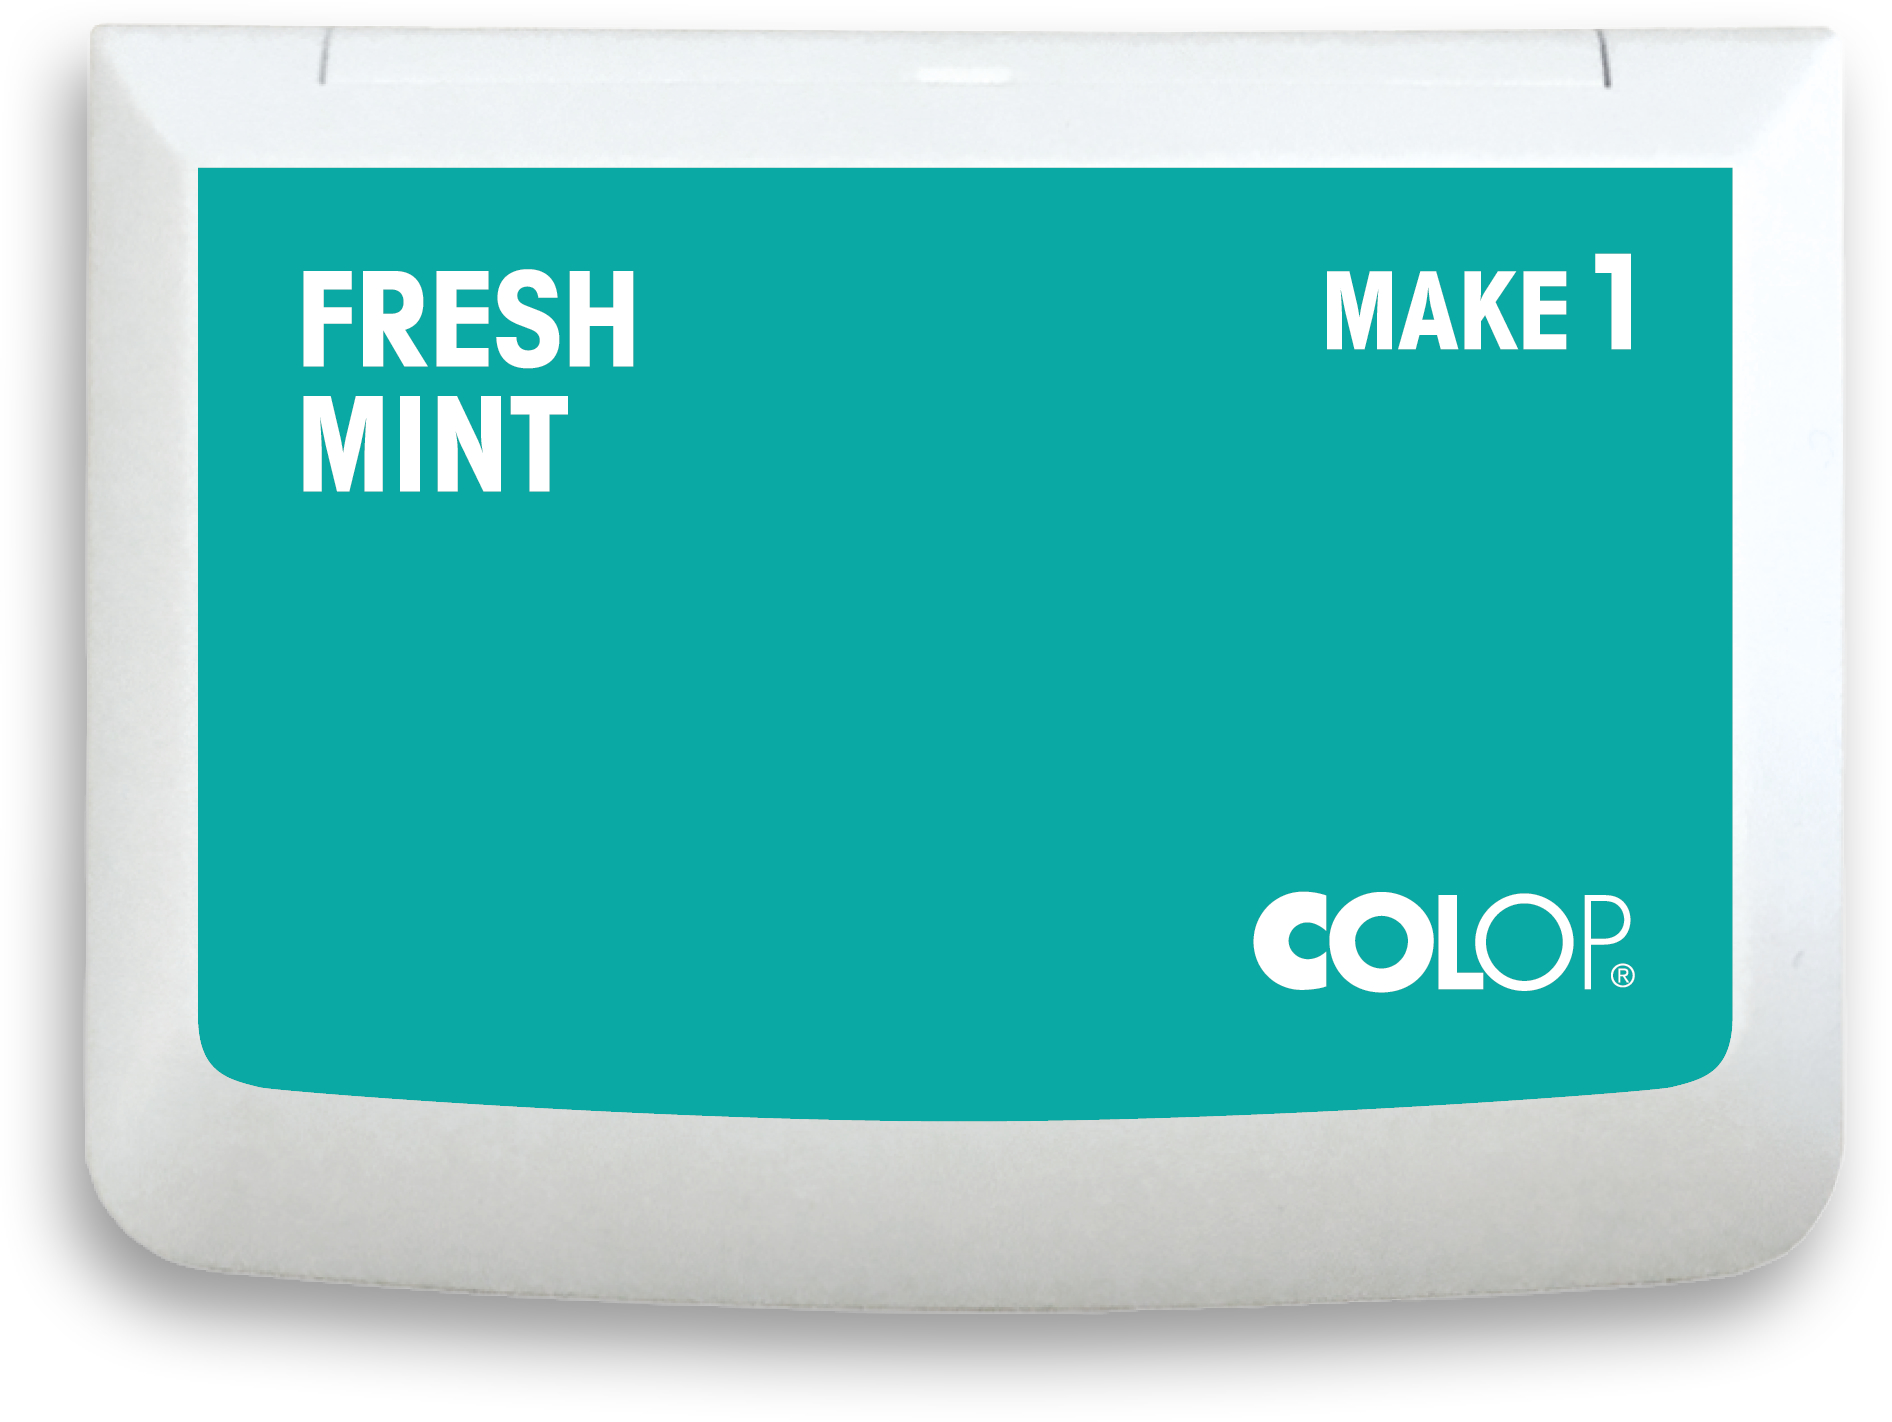 COLOP Tampon encreur 155124 MAKE1 fresh mint